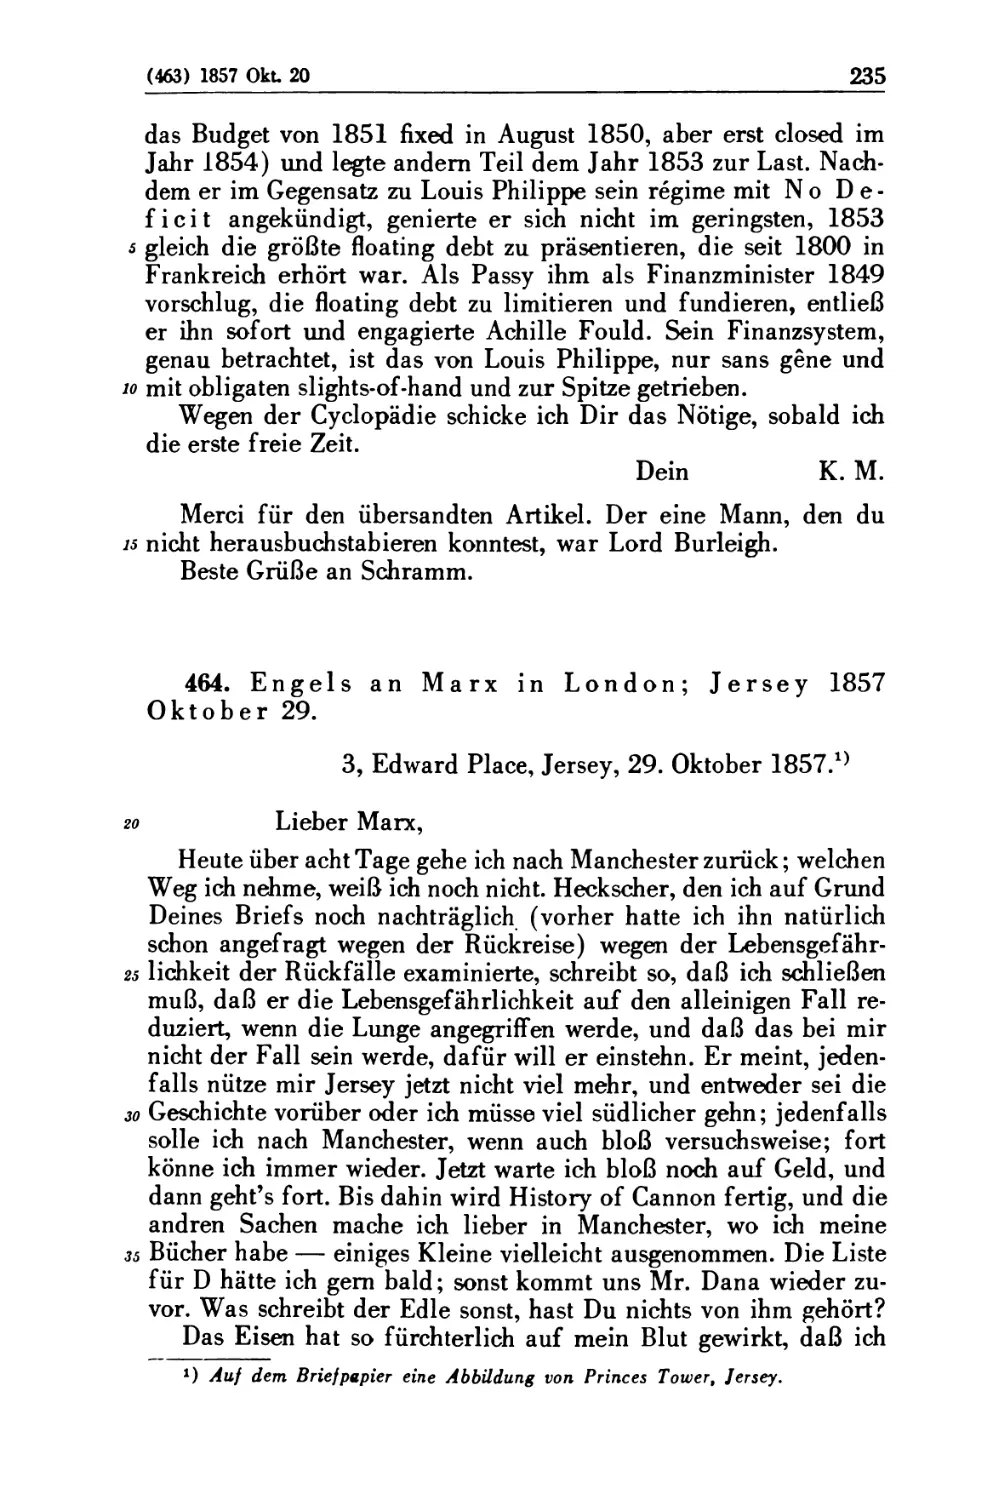 464. Engels an Marx in London; Jersey 1857 Oktober 29